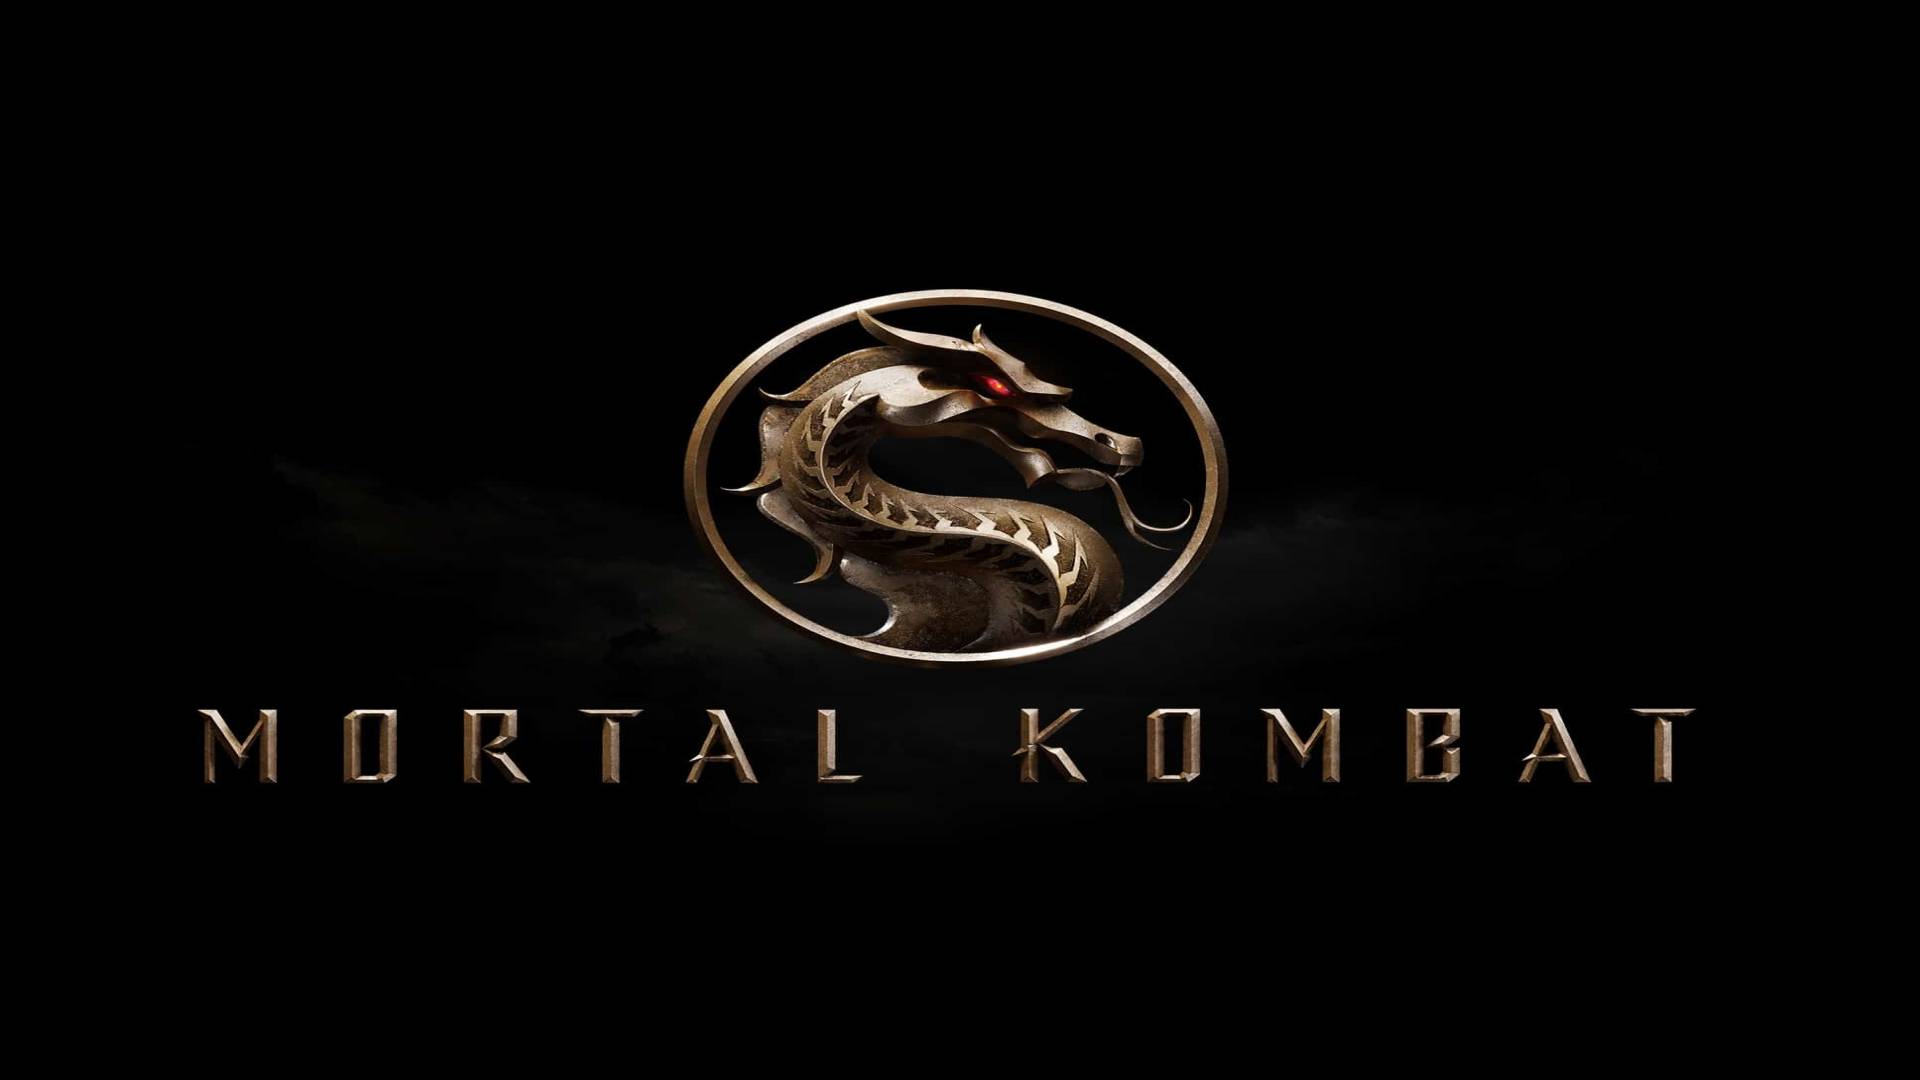 Já conhece o elenco de Mortal Kombat? Saiba quem é quem no filme